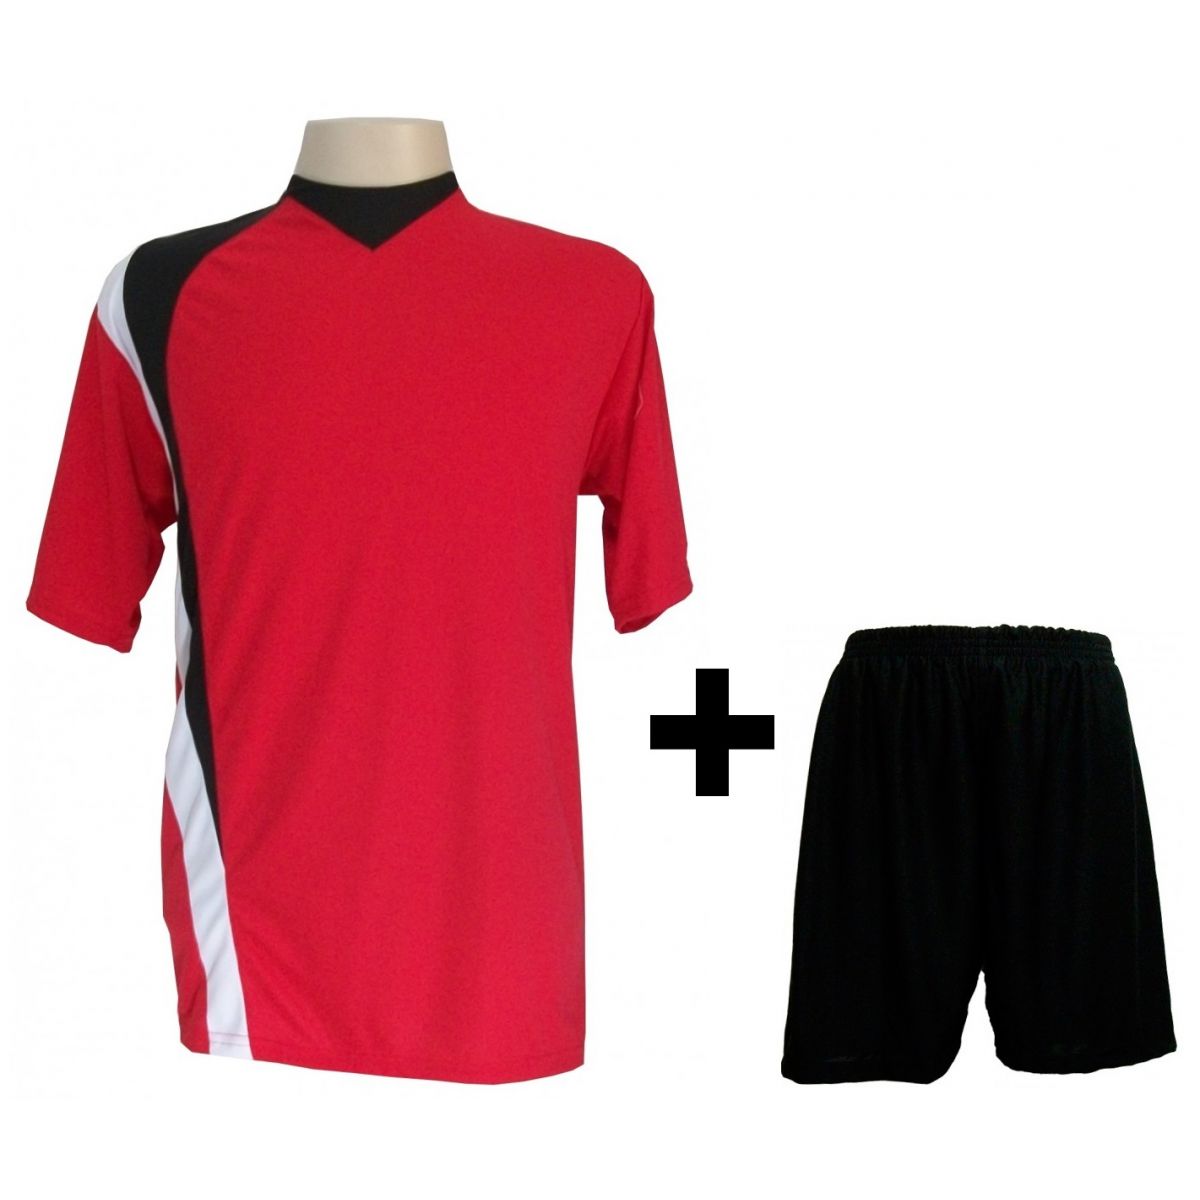 Uniforme Esportivo com 14 camisas modelo PSG Vermelho/Preto/Branco + 14 calções modelo Madrid Preto + Brindes